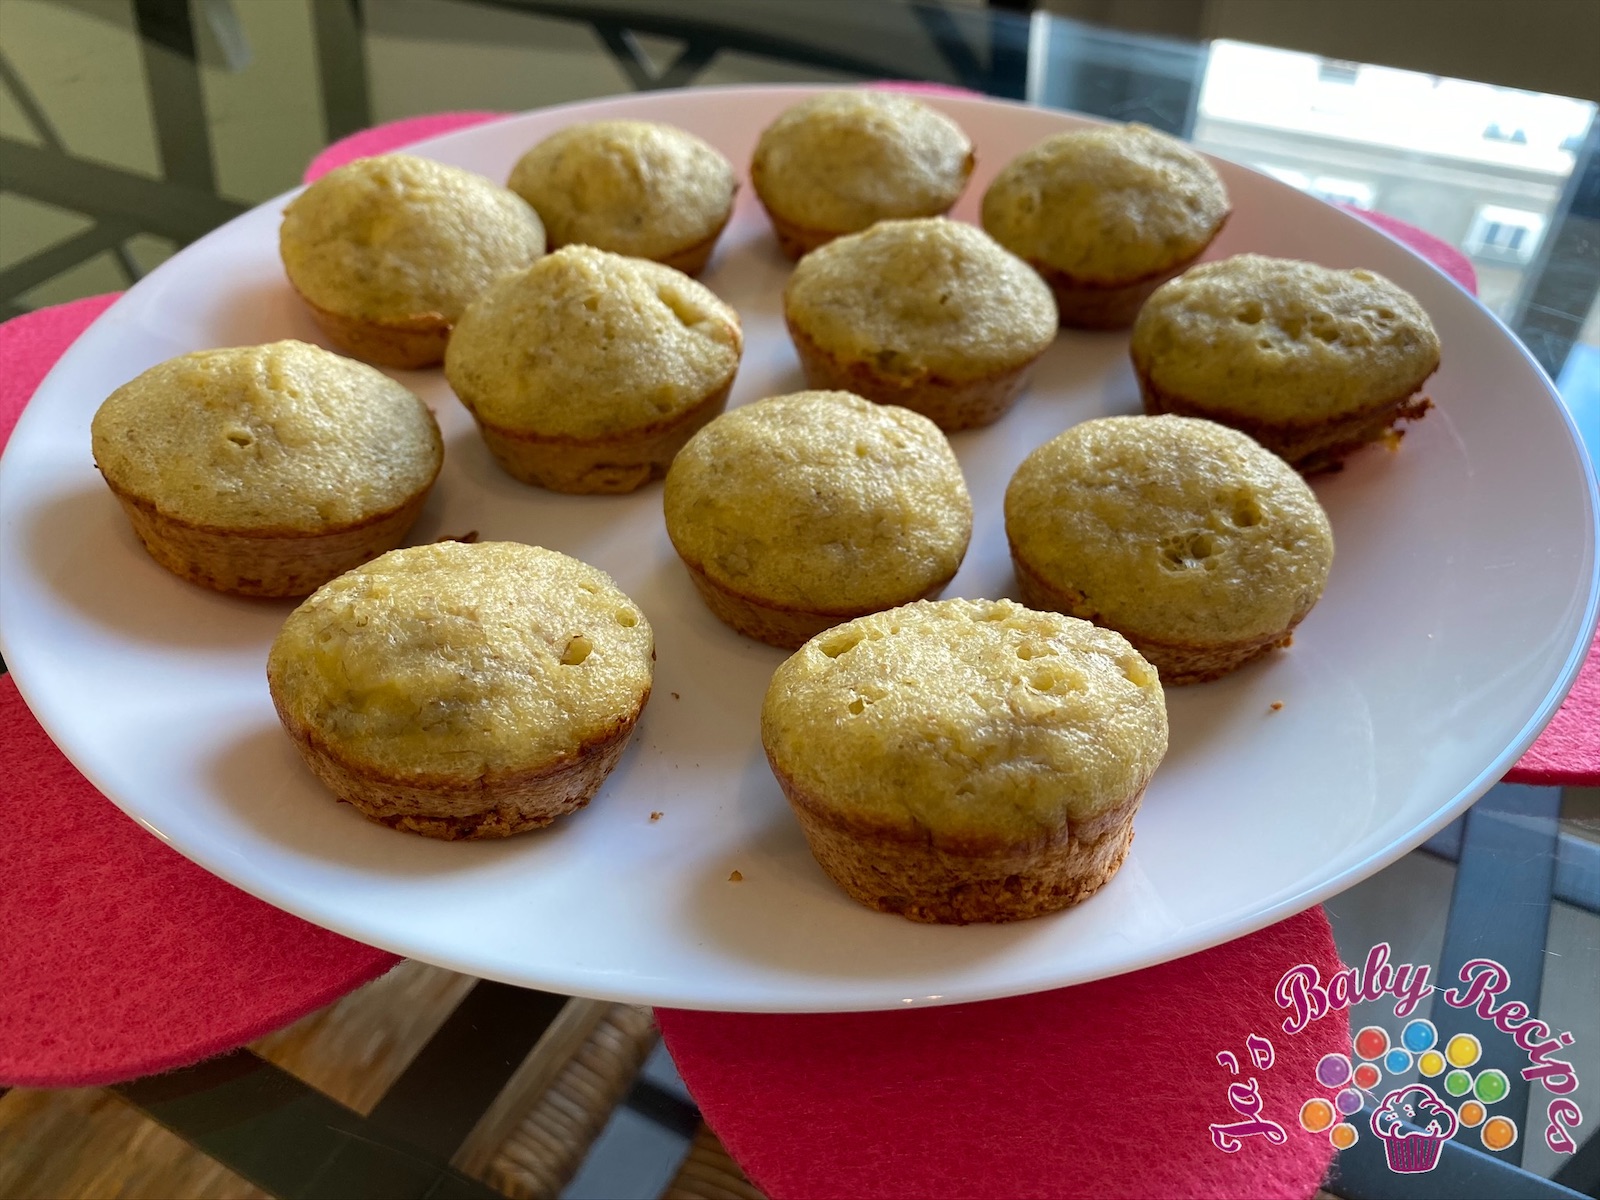 Muffins with semolina and bananas